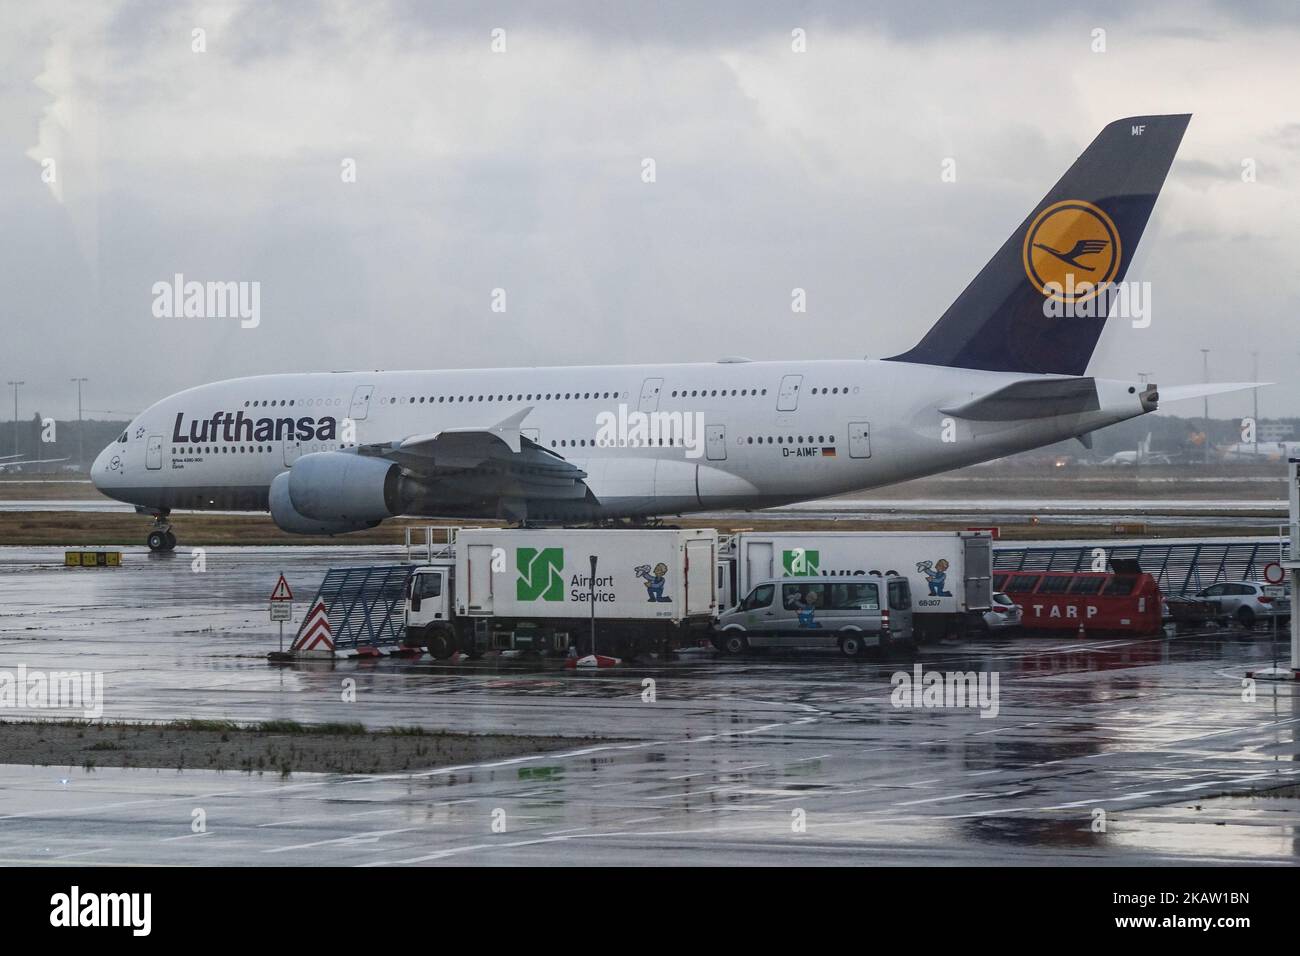 La flotta di Lufthansa come si vede all'aeroporto di Francoforte in Germania, il principale hub per la compagnia aerea. Lufthansa è la 10th compagnia aerea più grande del mondo con passeggeri trasportati nel 2016. La compagnia aerea possiede un fleeet di 273 aeromobili e 130 ordini. Lufthansa gestisce entrambi i super jumbo Jets Airbus A380 e Boeing 747-8 e 747-400. Lufthansa è anche il cliente di lancio della serie Airbus A320neo e già vola la A350. La compagnia aerea è uno dei membri fondatori della Star Alliance Aviation Affiliation. L'aeroporto di Francoforte è un aeroporto internazionale che collega la città tedesca al mondo (Photo by Nicolas Econo Foto Stock